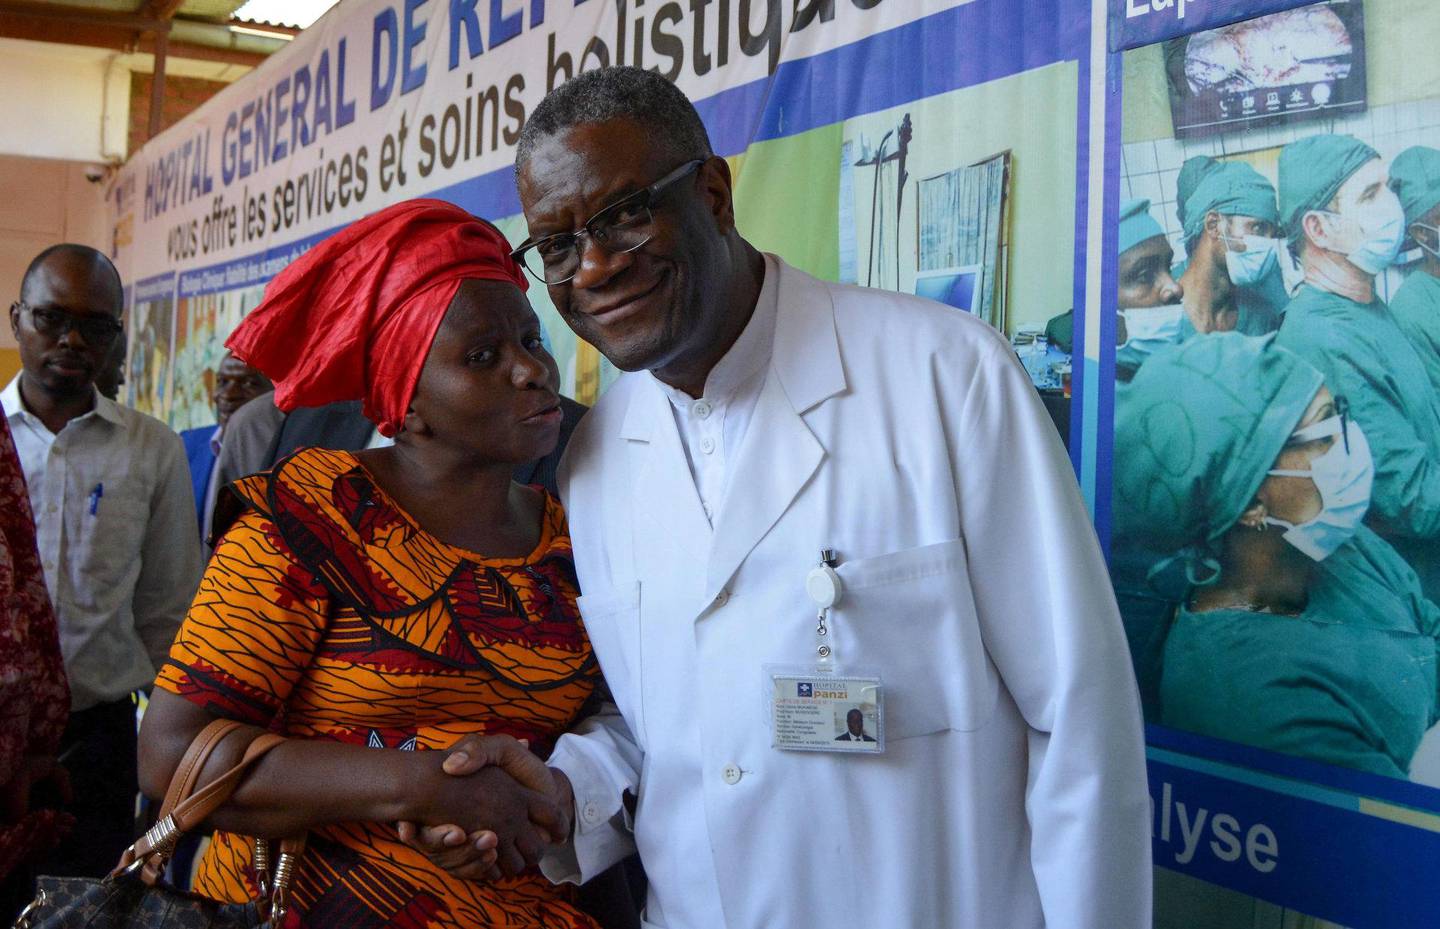 FREDSPRISVINNER: Gynekologen Denis Mukwege får Nobels fredspris i år for sitt arbeid for voldtatte kvinner i DR Kongo. Voldtekt som våpen blir brukt i konflikt verden over. FOTO: NTB SCANPIX